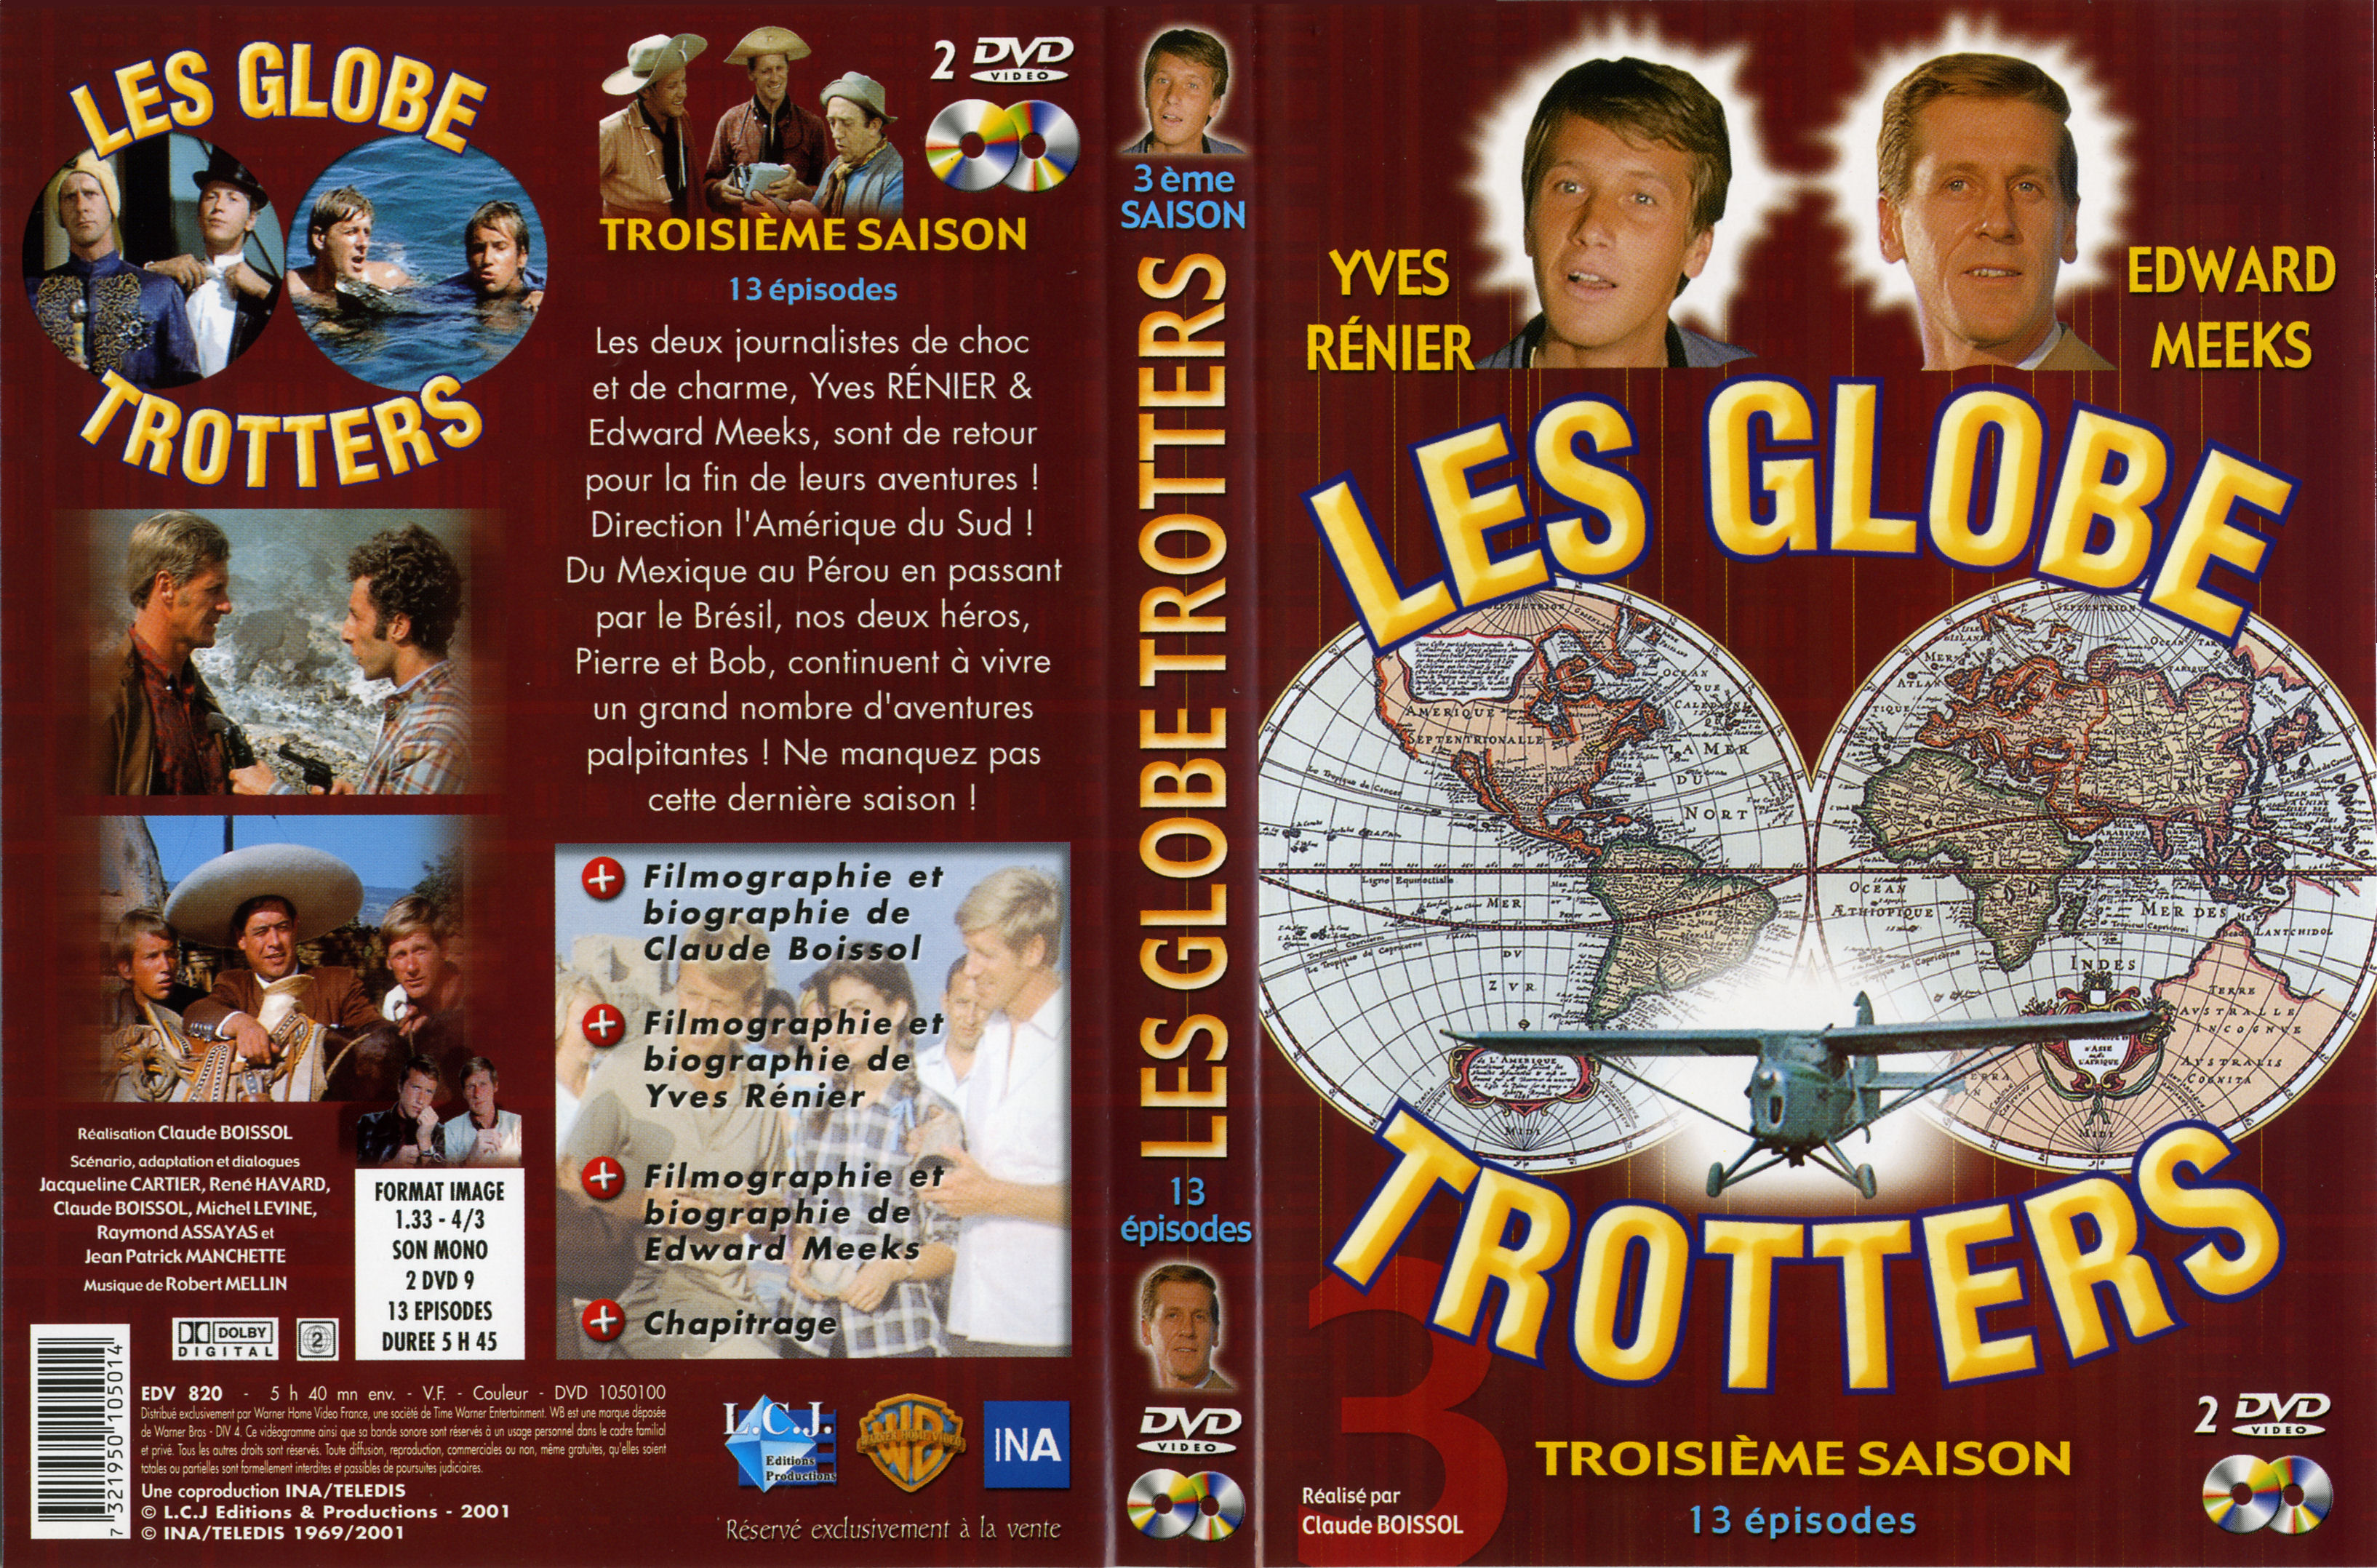 Jaquette DVD Les globe trotters Saison 3